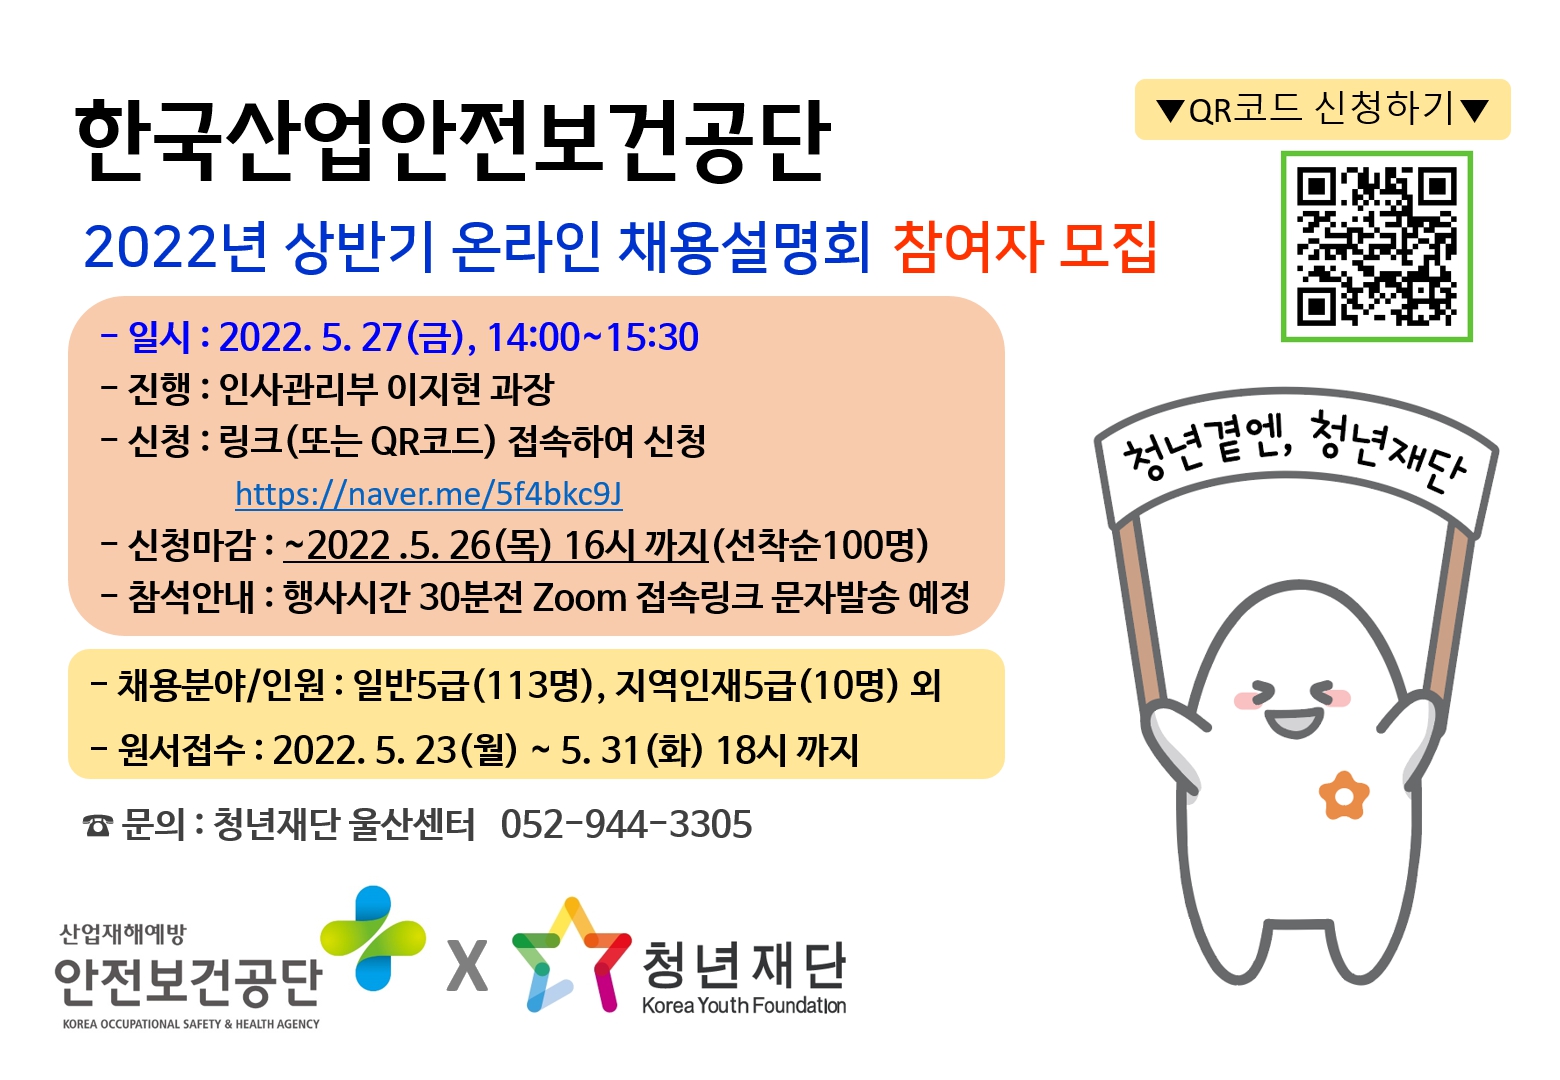 한국산업안전보건공단 2022년 상반기 온라인 채용설명회 참여자 모집 : 내용은 글을 참고해주시길 바랍니다.